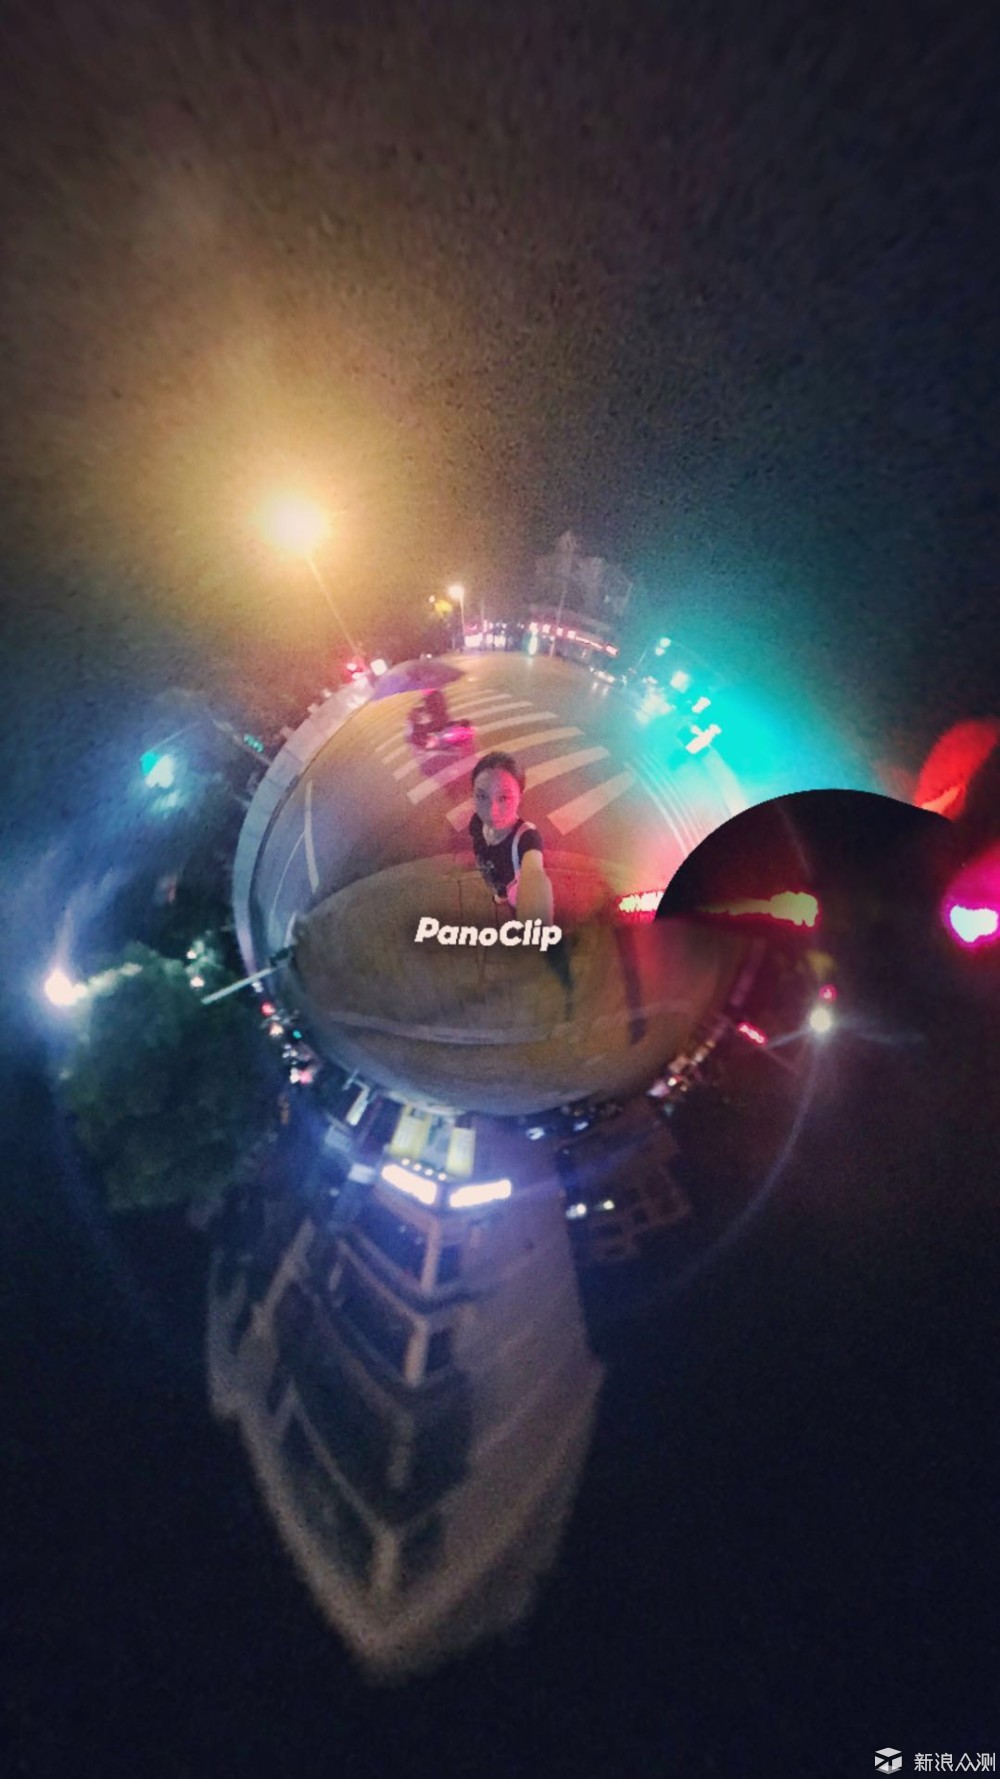 分享PanoClip Lite 360°全景摄像头体验_新浪众测